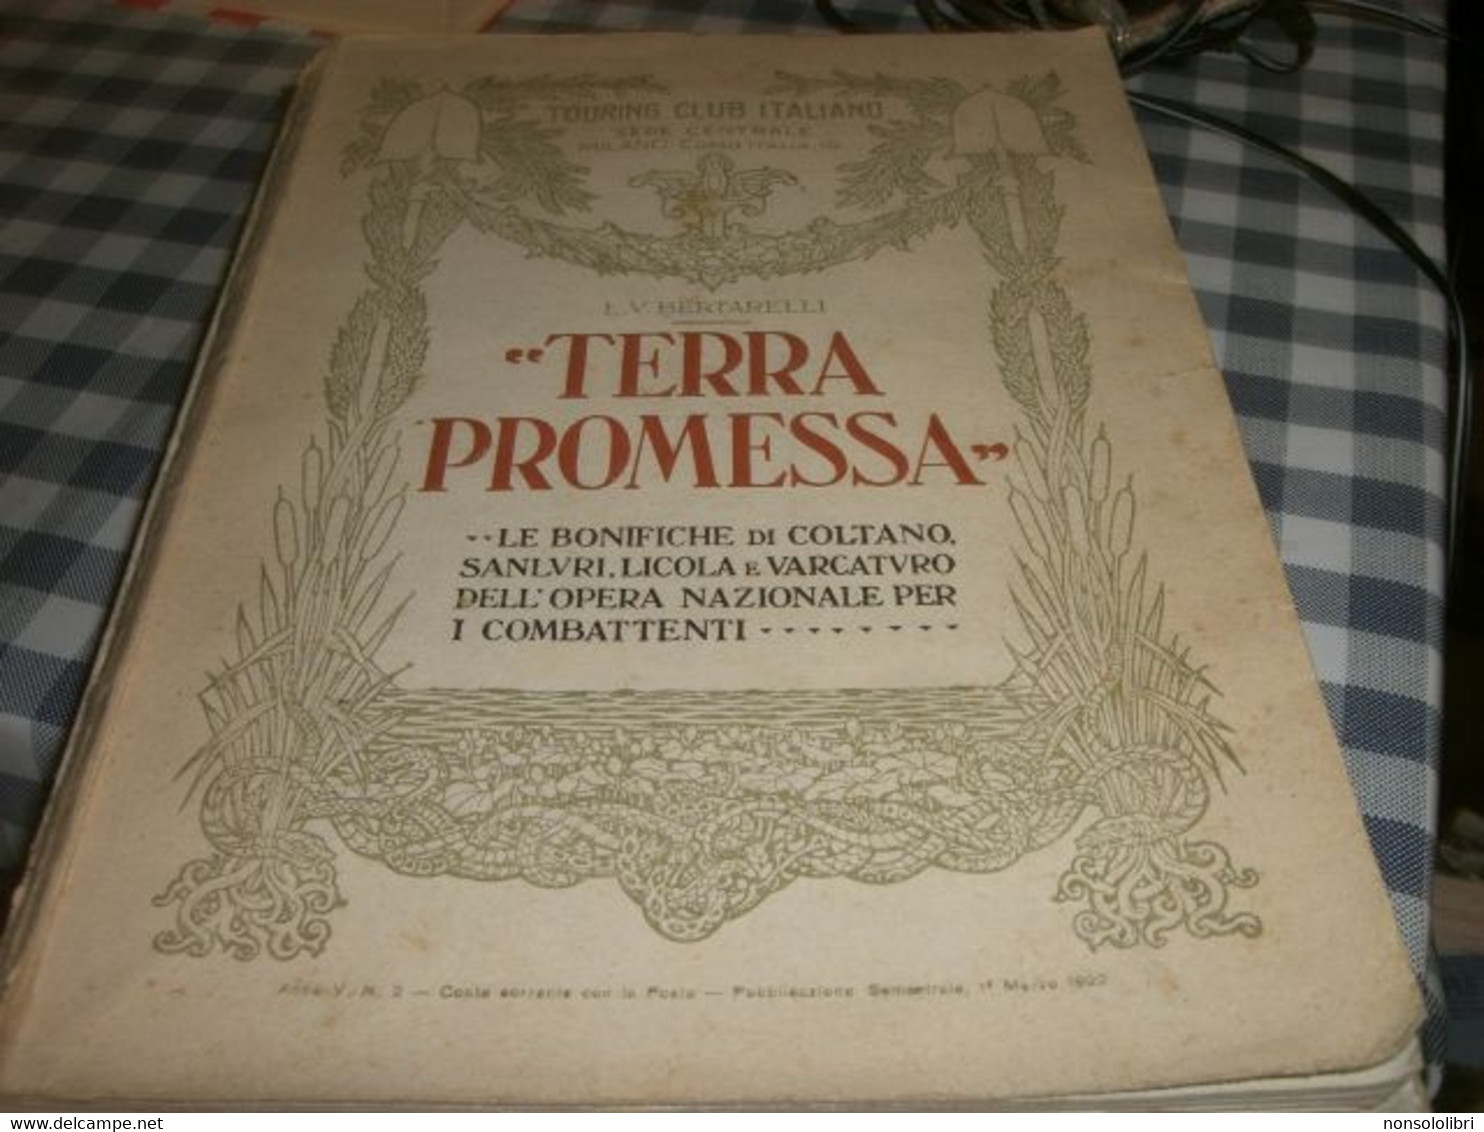 LIBRO TERRA PROMESSA -TOUTING CLUB ITALIANO -BERTARELLI - Society, Politics & Economy